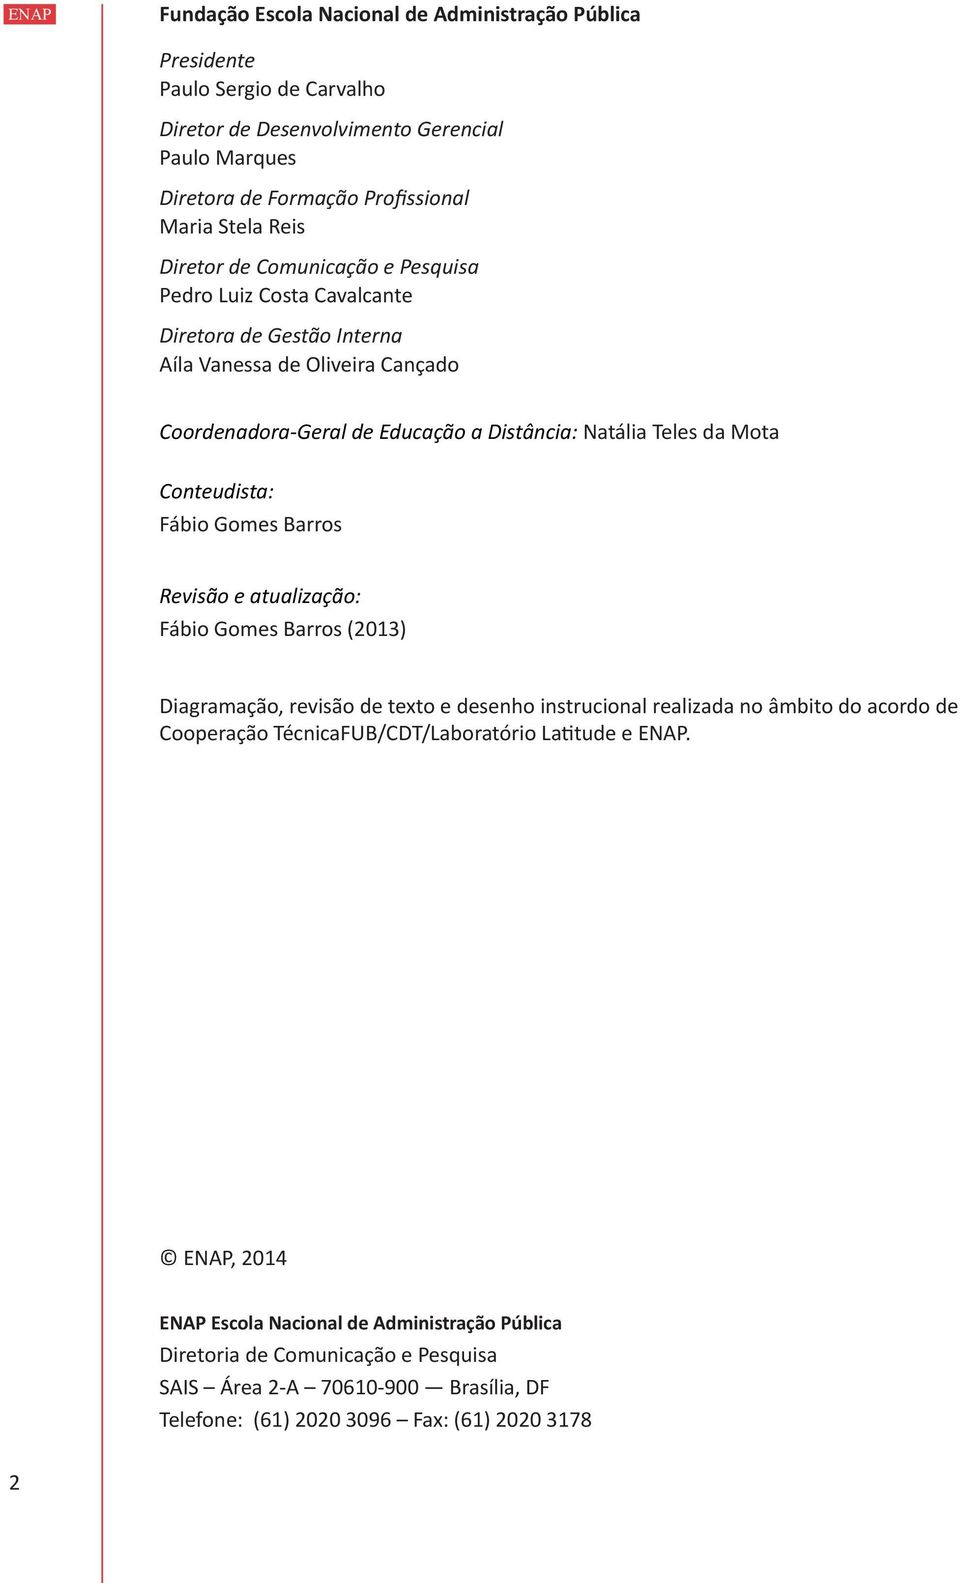 Conteudista: Fábio Gomes Barros Revisão e atualização: Fábio Gomes Barros (2013) Diagramação, revisão de texto e desenho instrucional realizada no âmbito do acordo de Cooperação